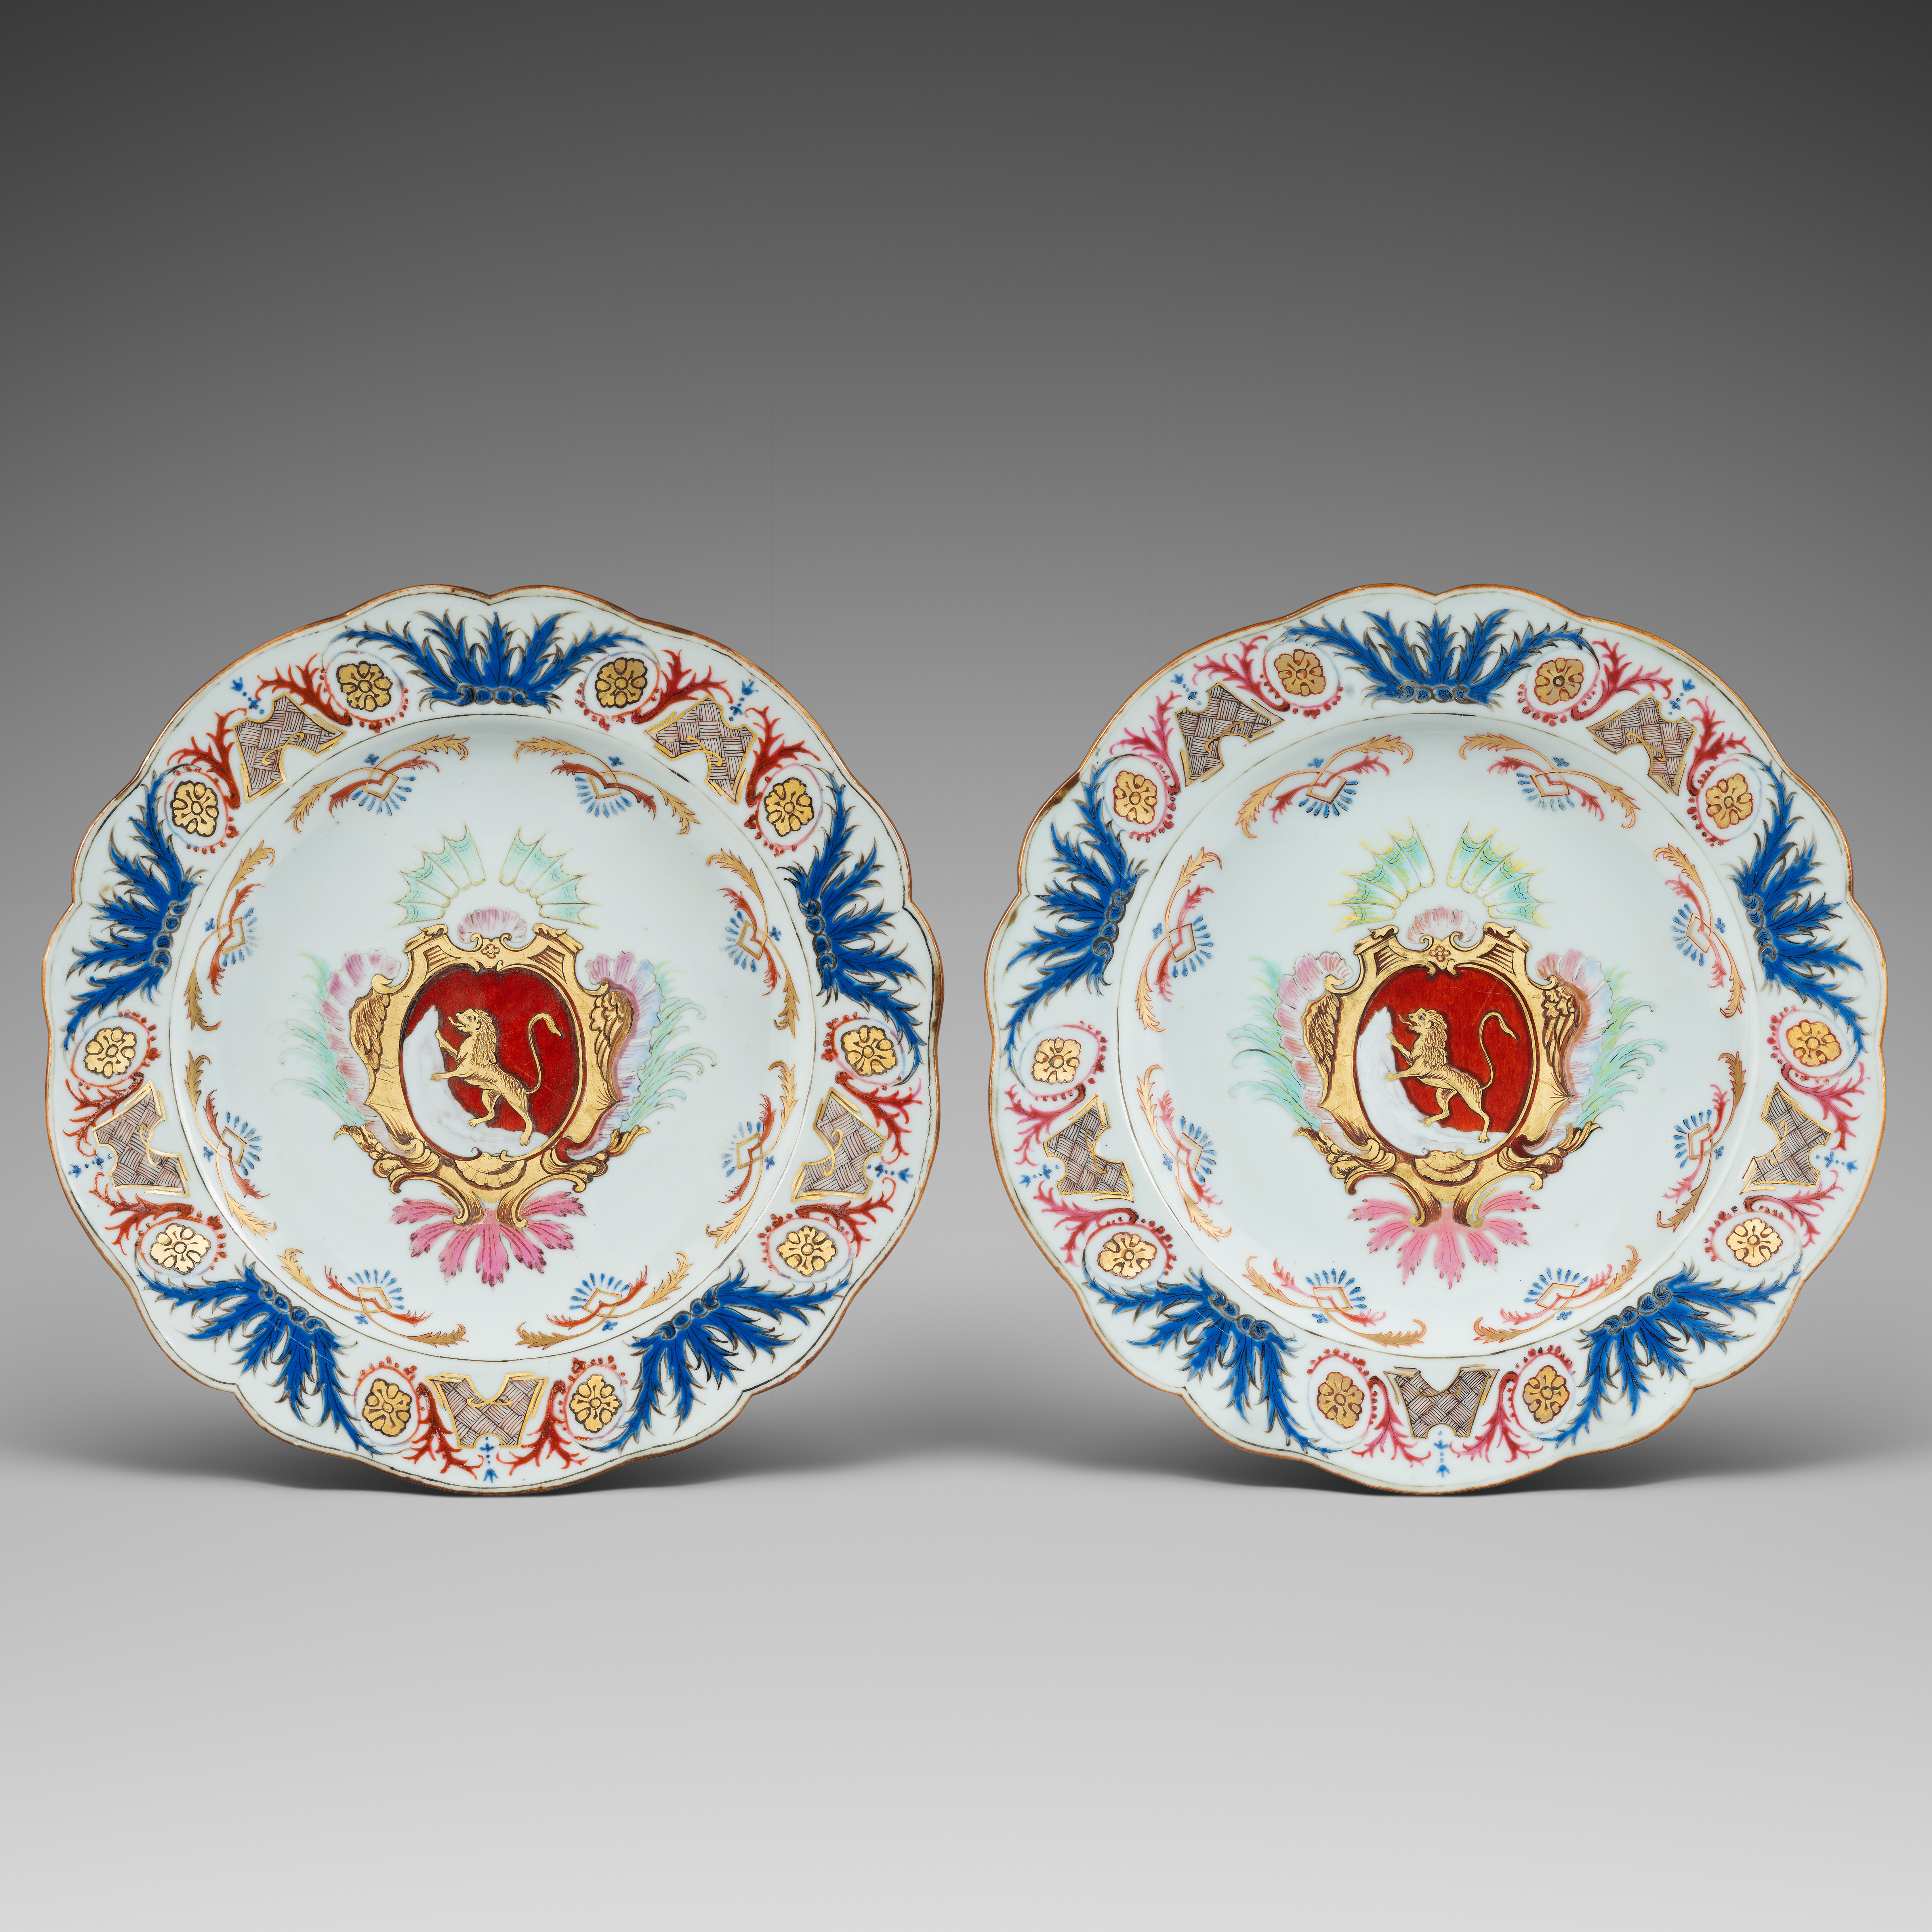 Porcelaine Yongzheng (1723-1735), circa 1730, China